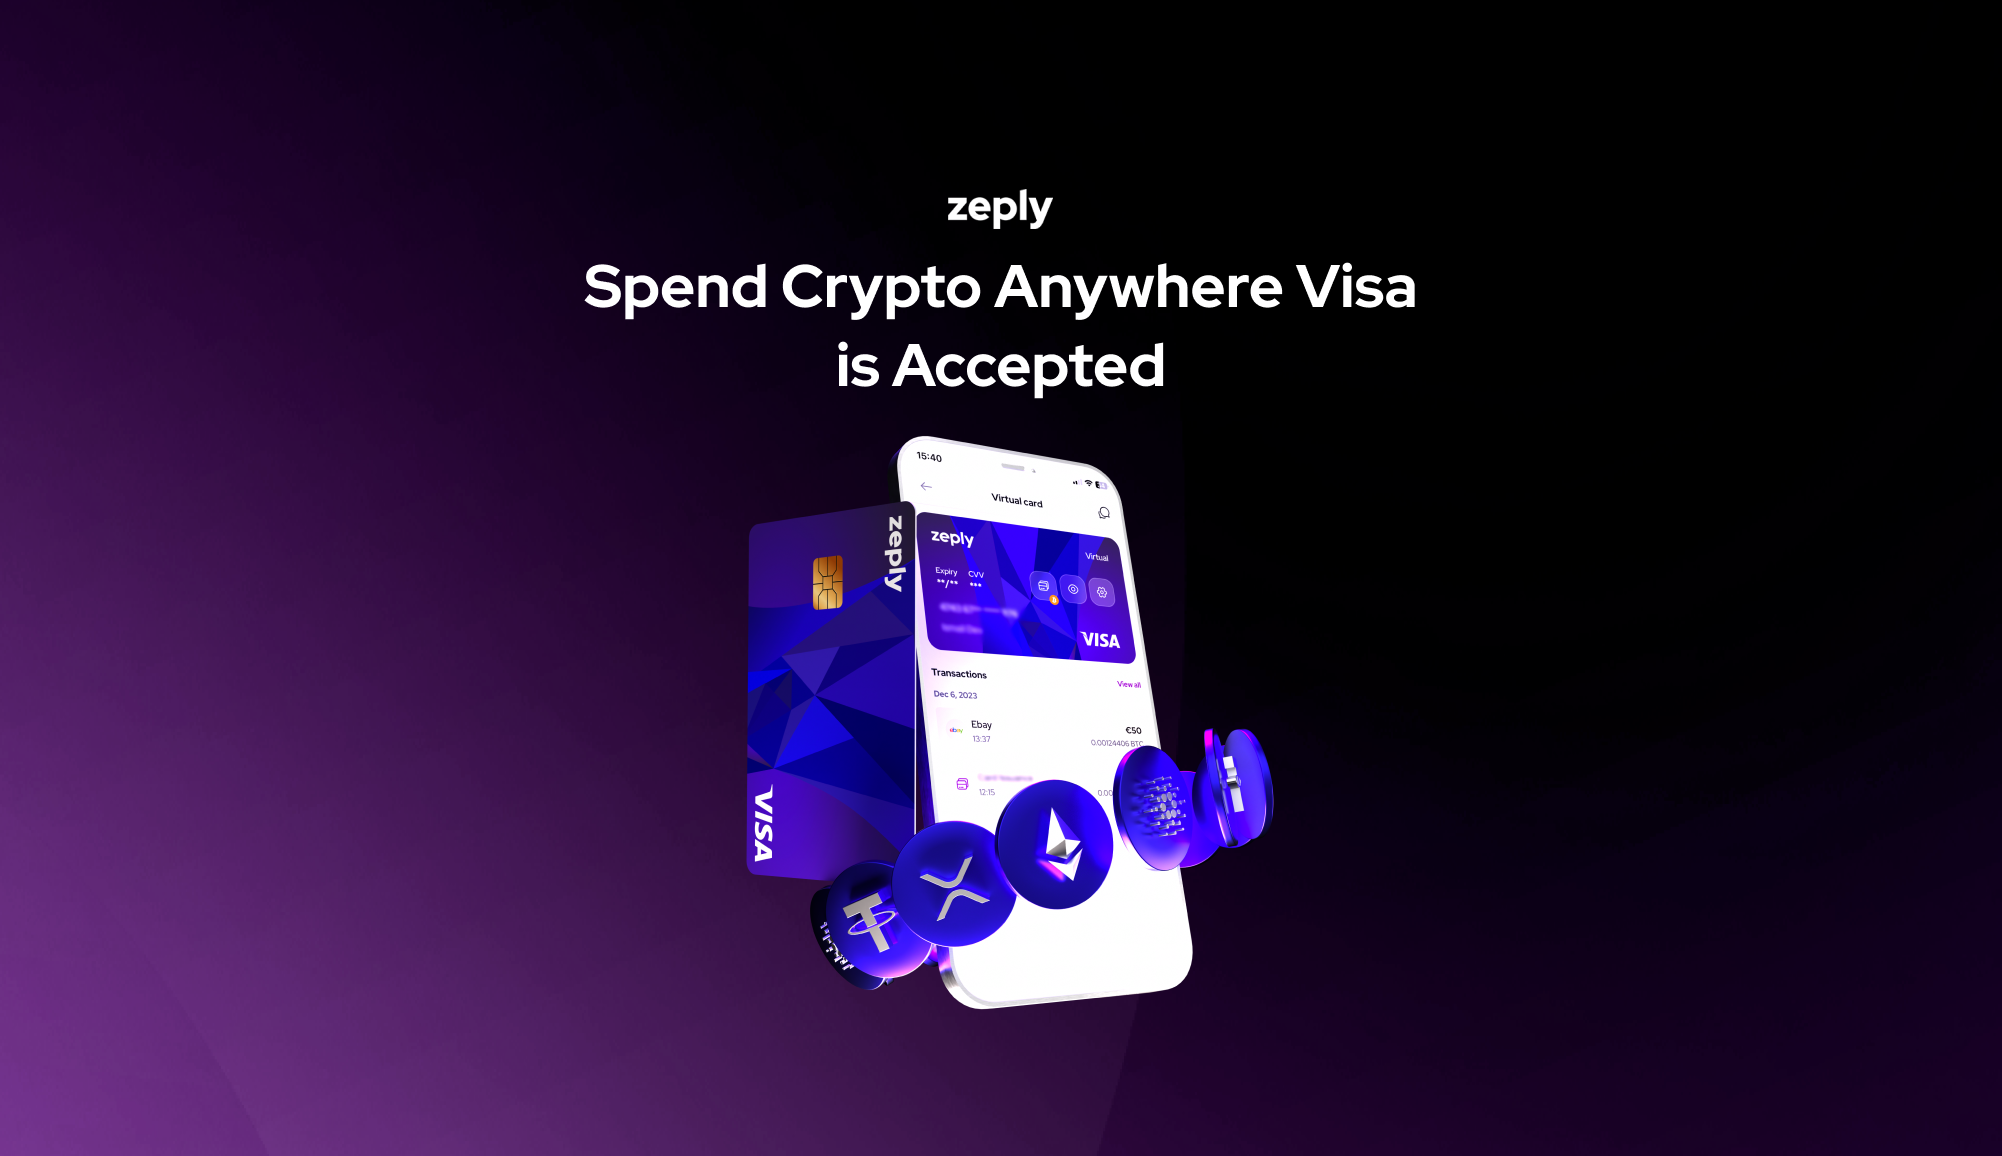 Tarjeta Visa de cripto y Bitcoin de Zeply con diseño elegante.